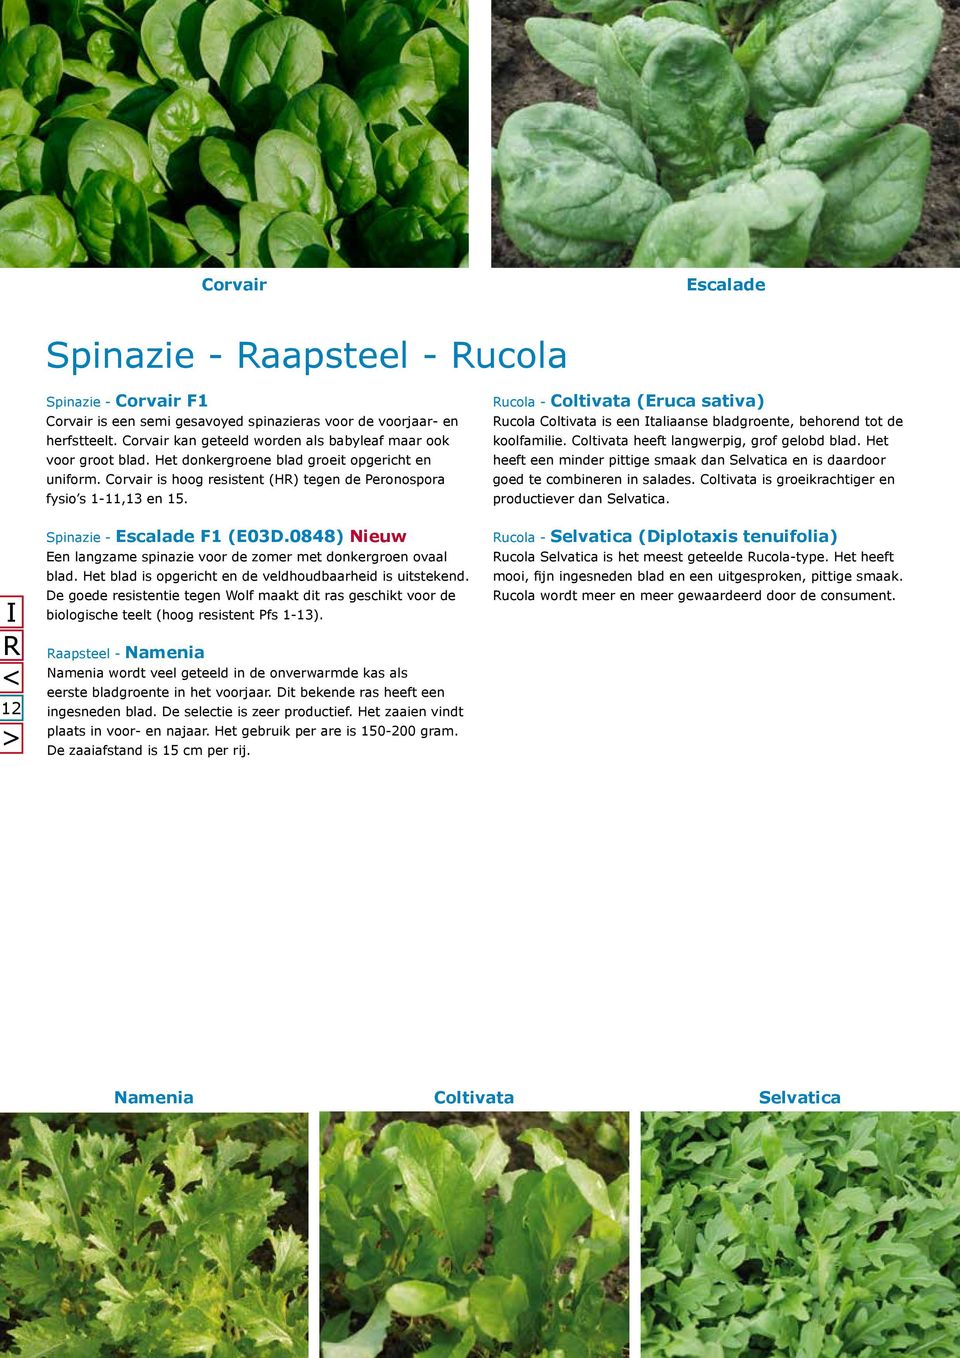 Spinazie - Escalade F1 (E03D.0848) Nieuw Een langzame spinazie voor de zomer met donkergroen ovaal blad. Het blad is opgericht en de veldhoudbaarheid is uitstekend.